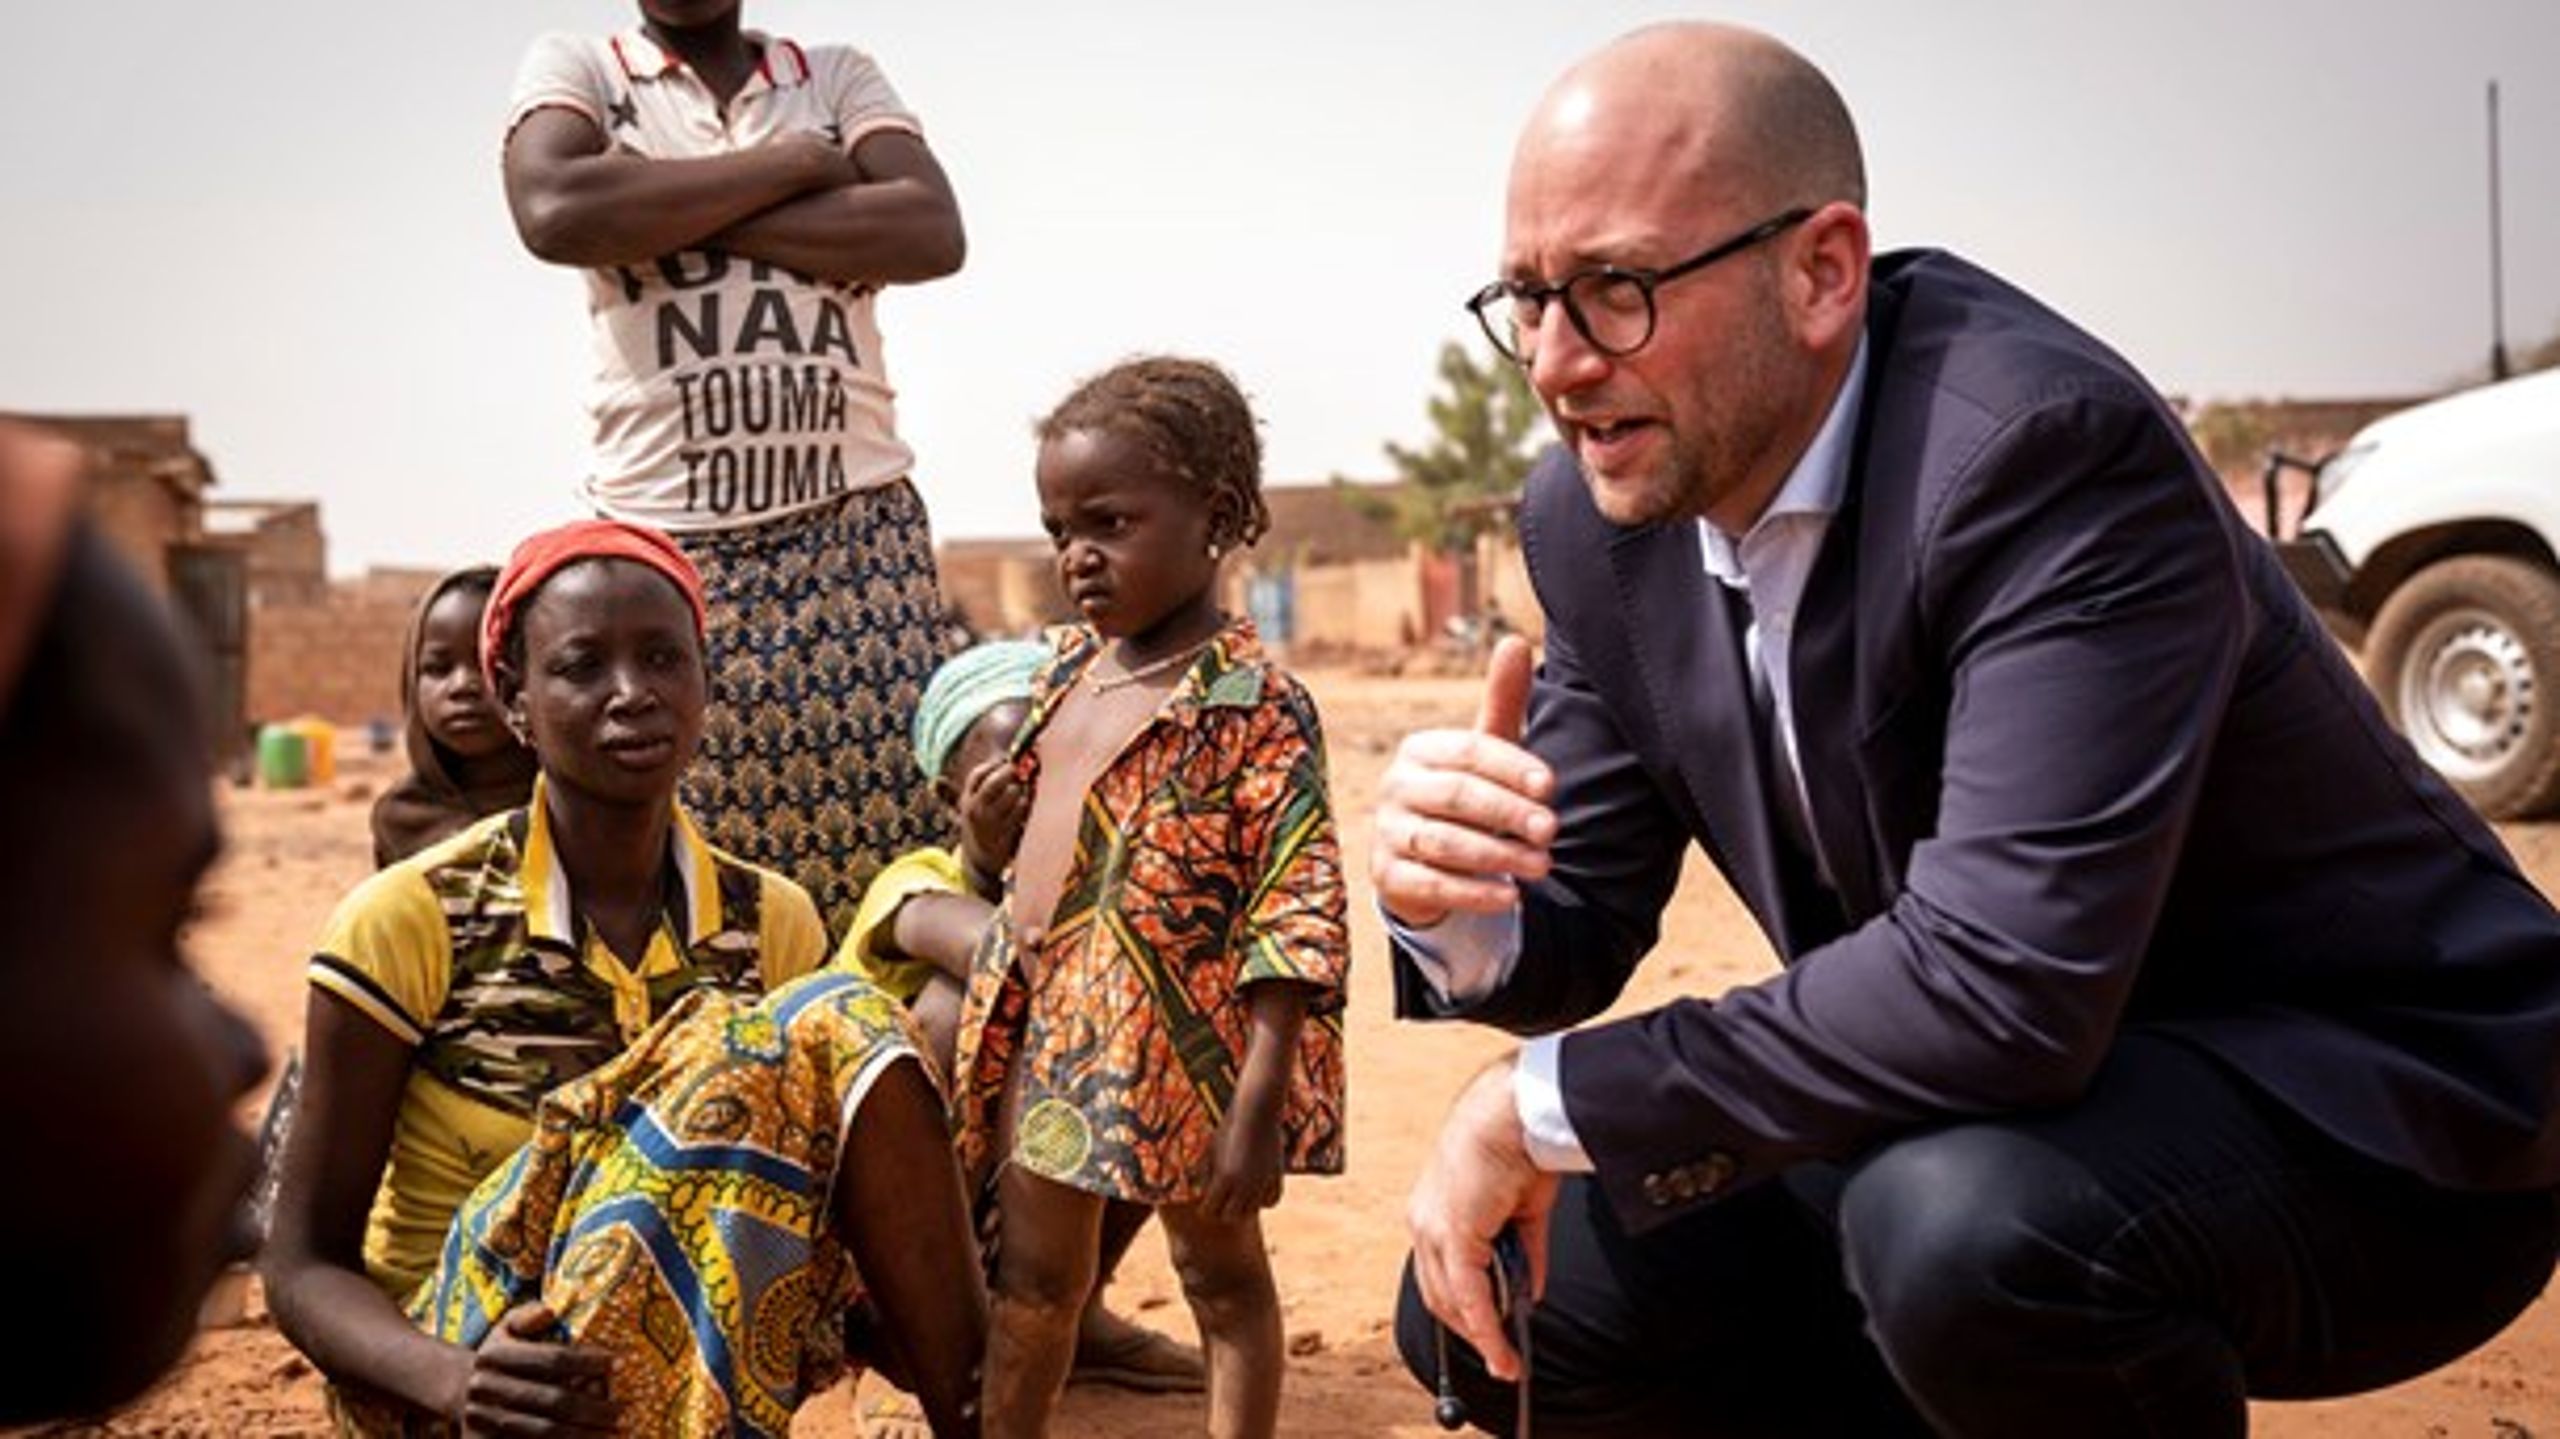 Minister for udviklingssamarbejder&nbsp;Rasmus Prehn (S) besøgte i januar&nbsp;en stor gruppe internt fordrevne i Kaya, Burkina Faso. Landet er et af de lande, der er særligt fokus på i regeringens finanslovsudspil.